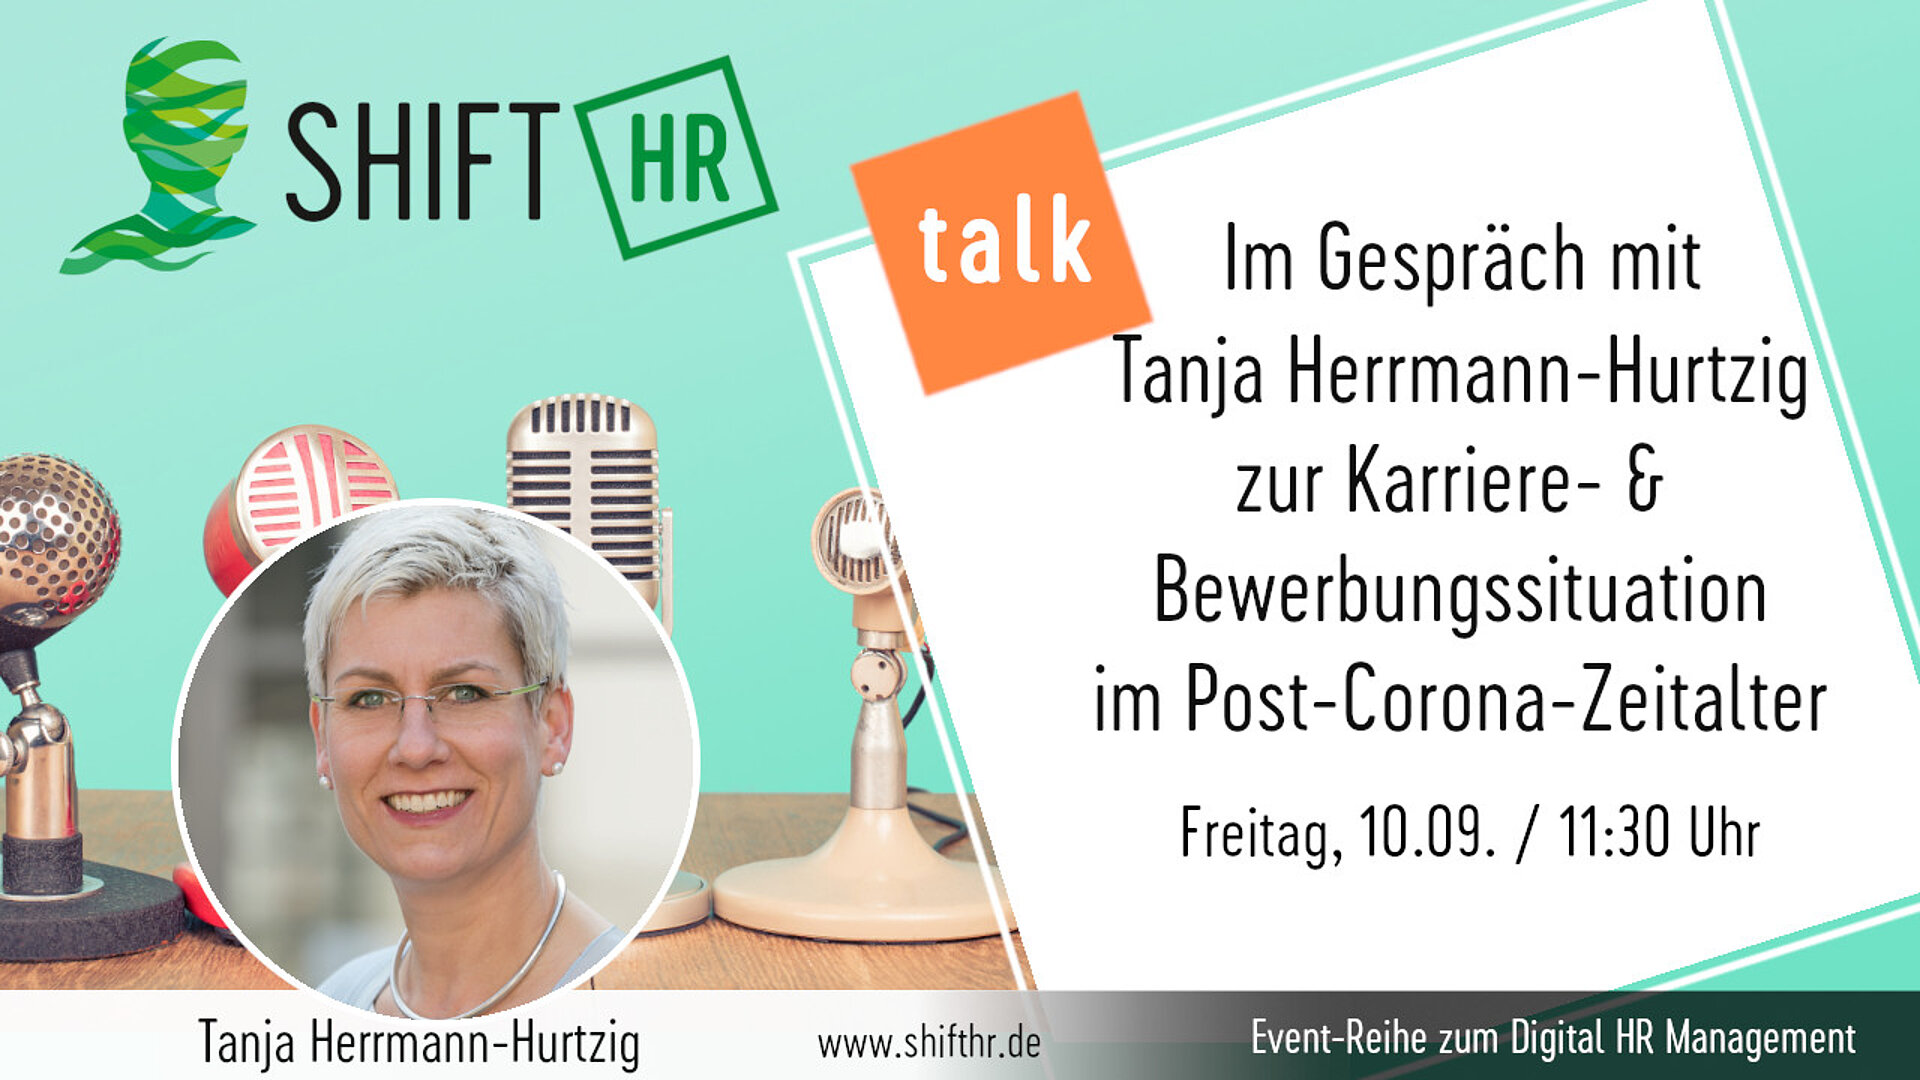 Im Gespräch mit Tanja Herrmann-Hurtzig zu den Herausforderungen der Karriere- & Bewerbungssituation im Post-Corona-Zeitalter